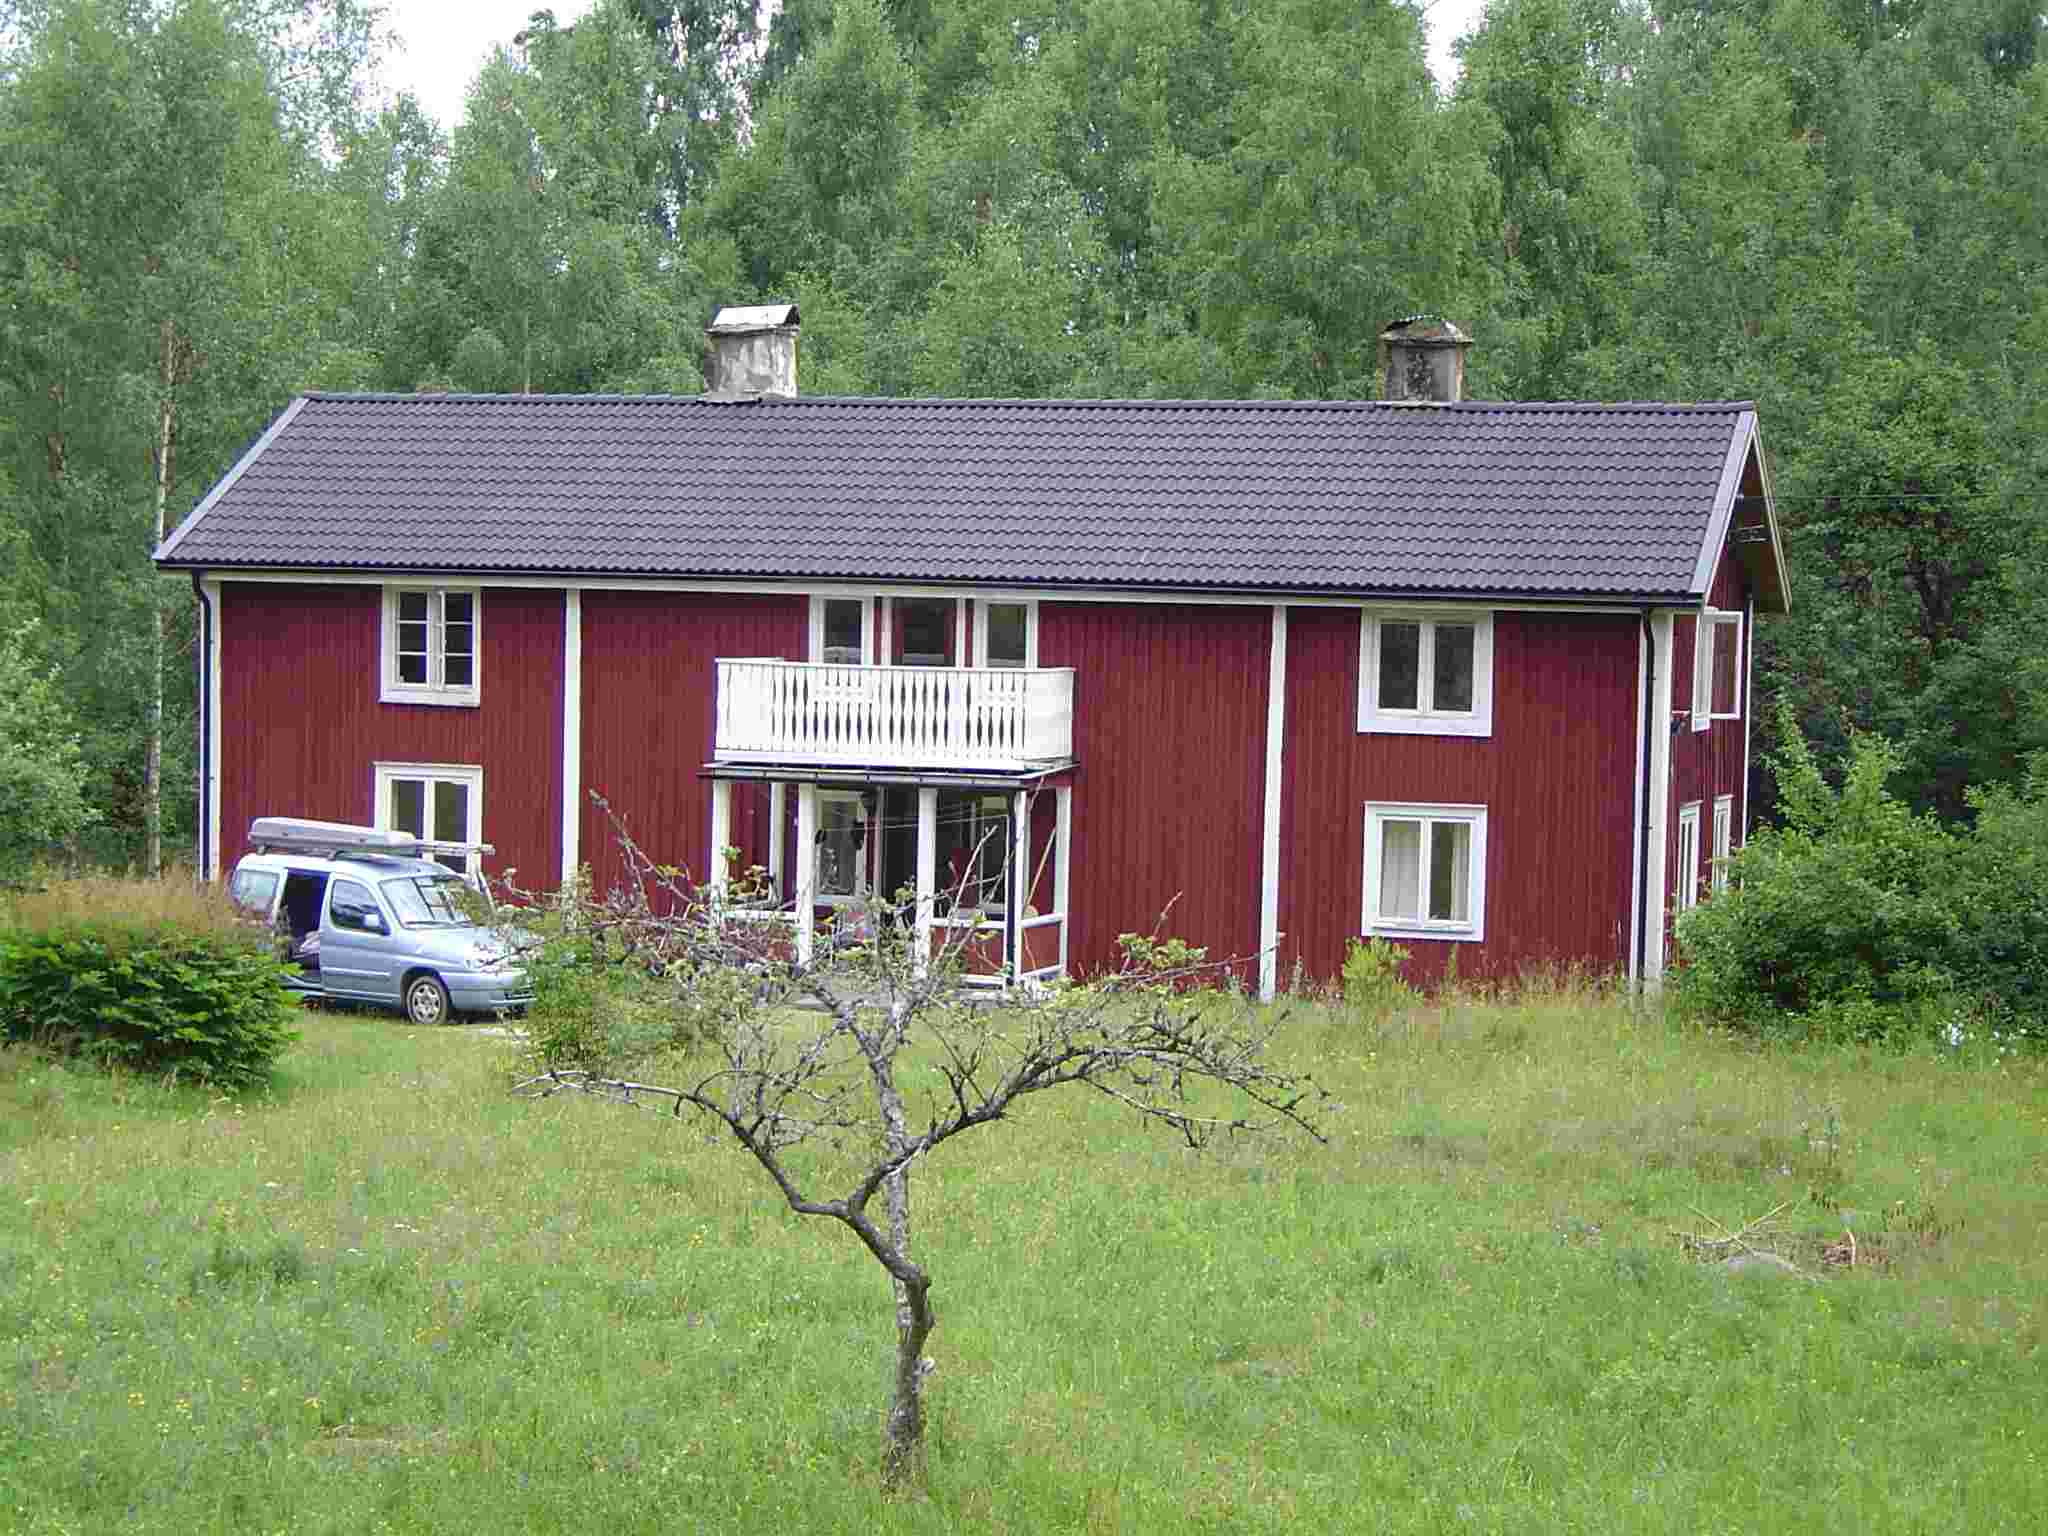 springvand Genbruge Grusom Skøn Ødegaard i Sverige, Ødegårdsferie leje af ødegård ferienhaus vermietung